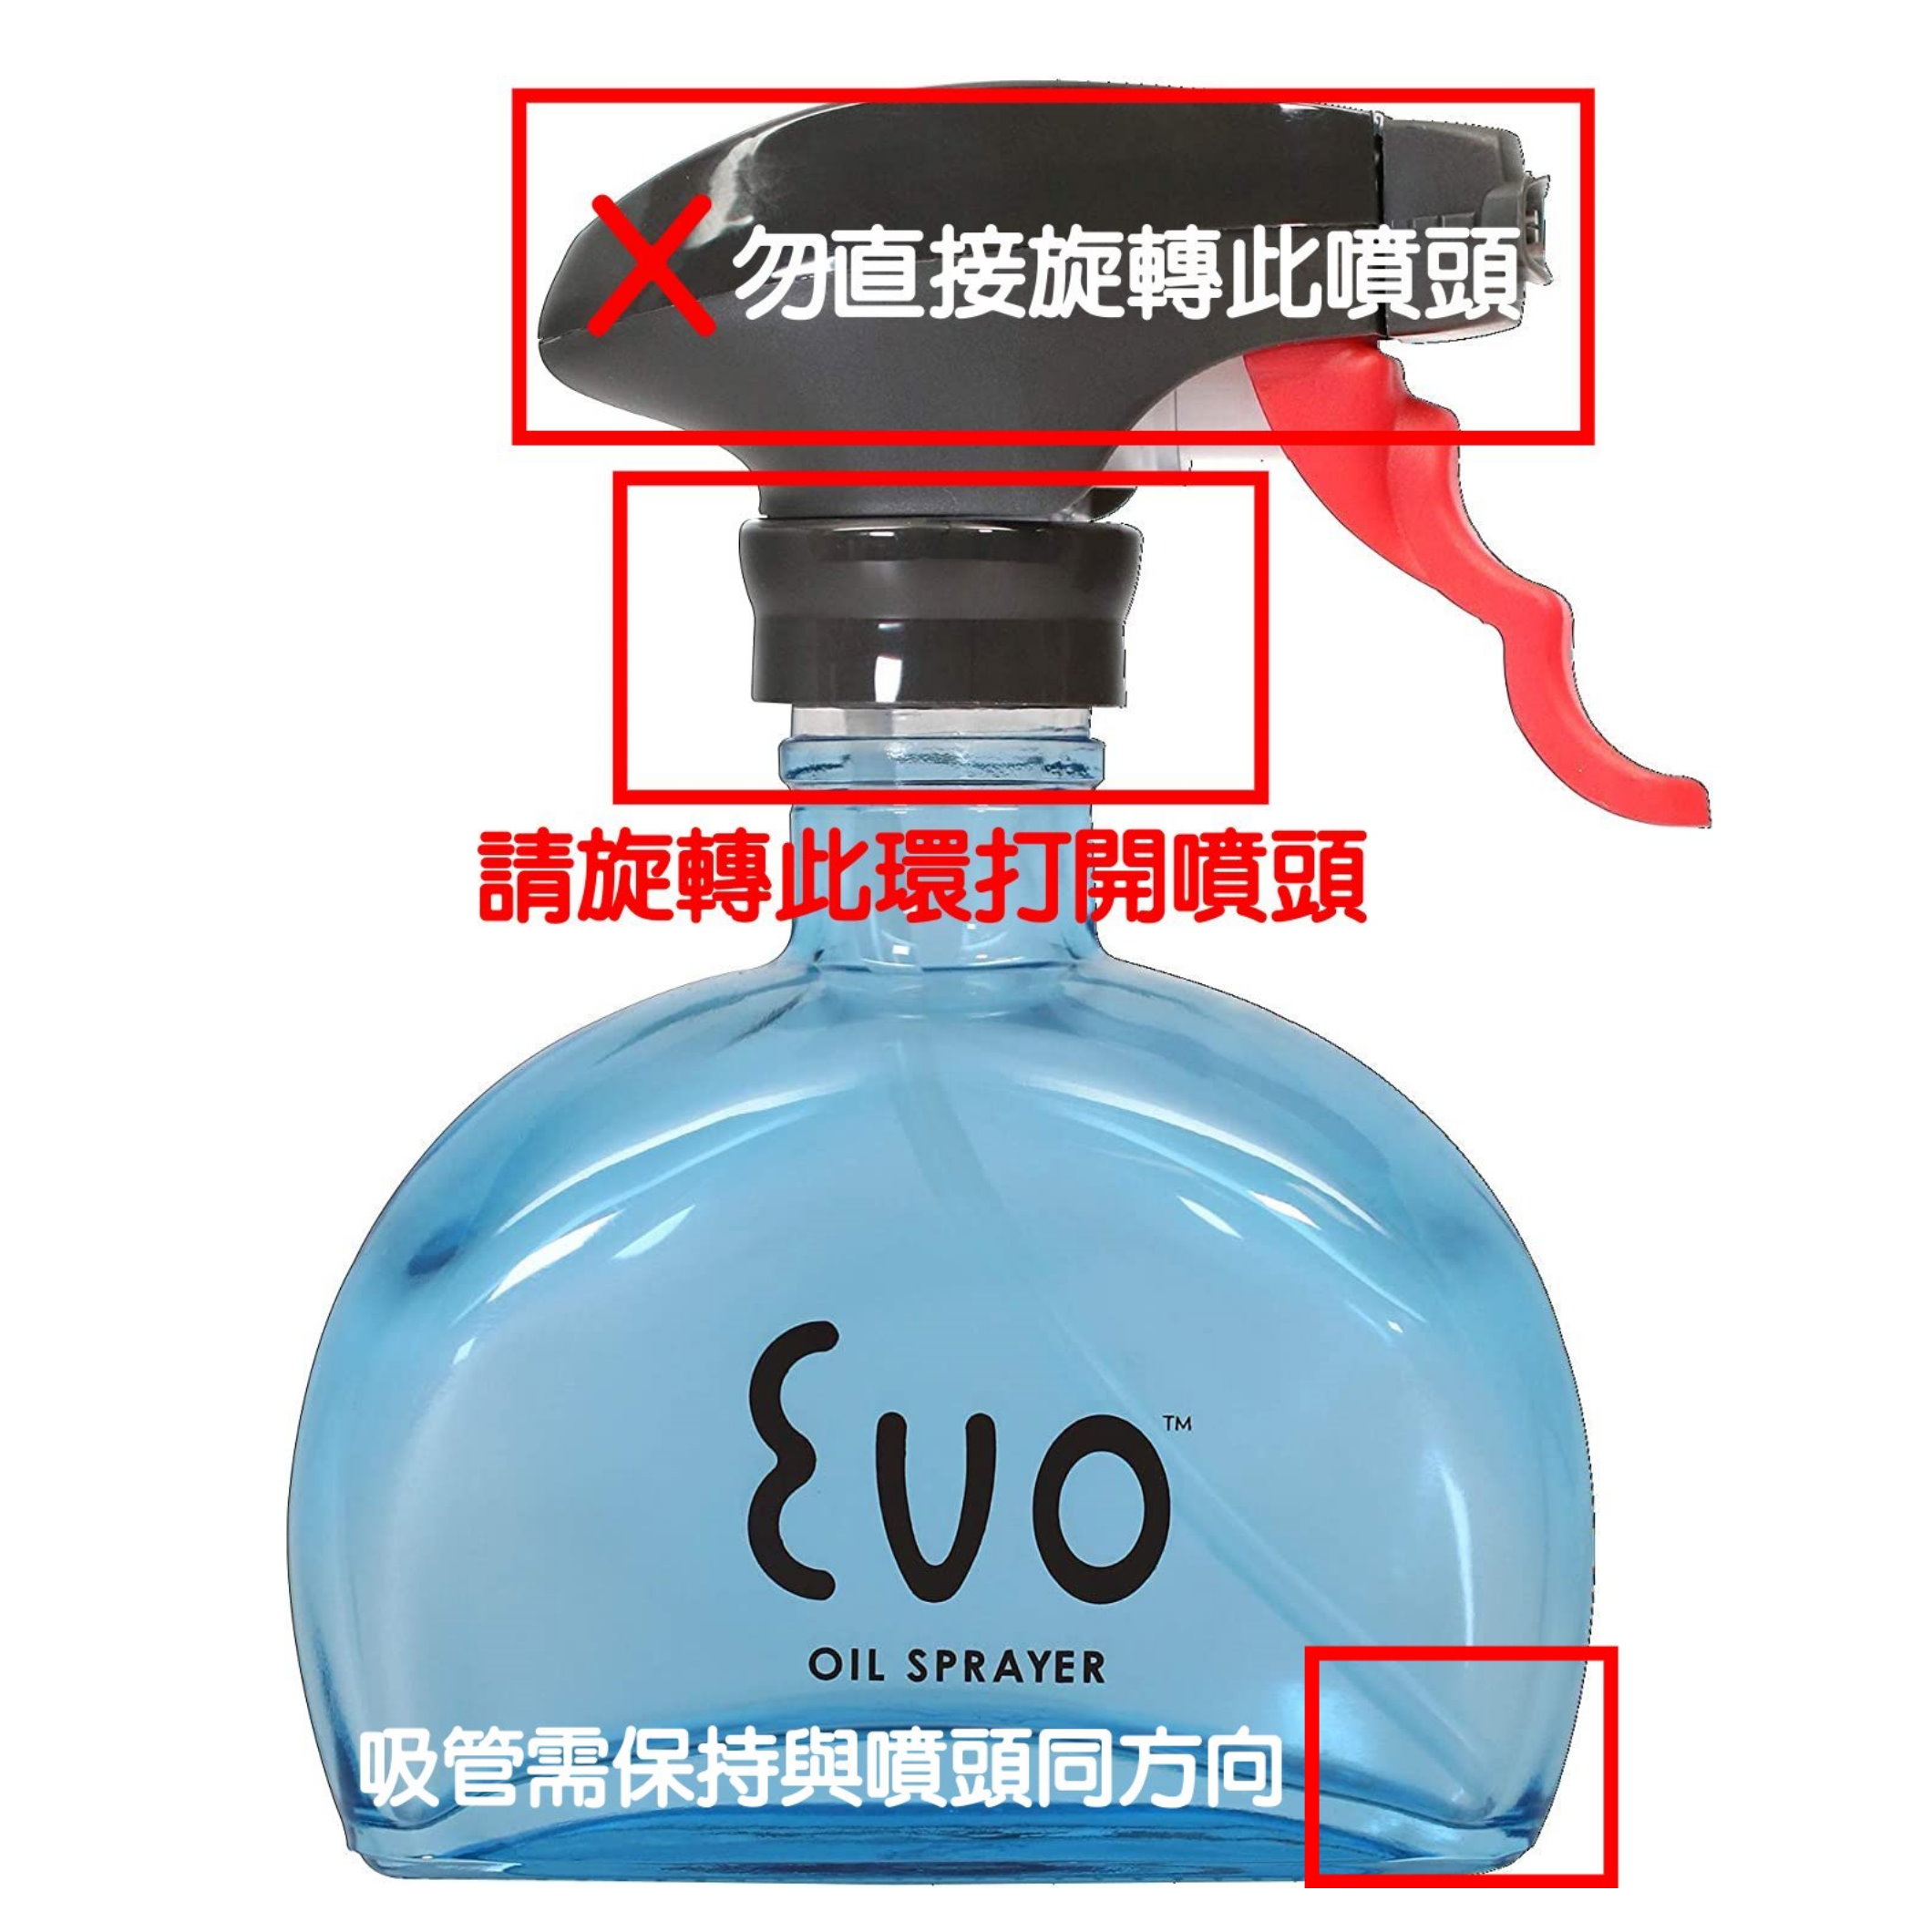 [4美國直購少量現貨] Evo Oil Sprayer 玻璃噴油瓶 黃 6oz BPA Free 烹飪 氣炸鍋 減醣 輕食沙拉_CB4 2